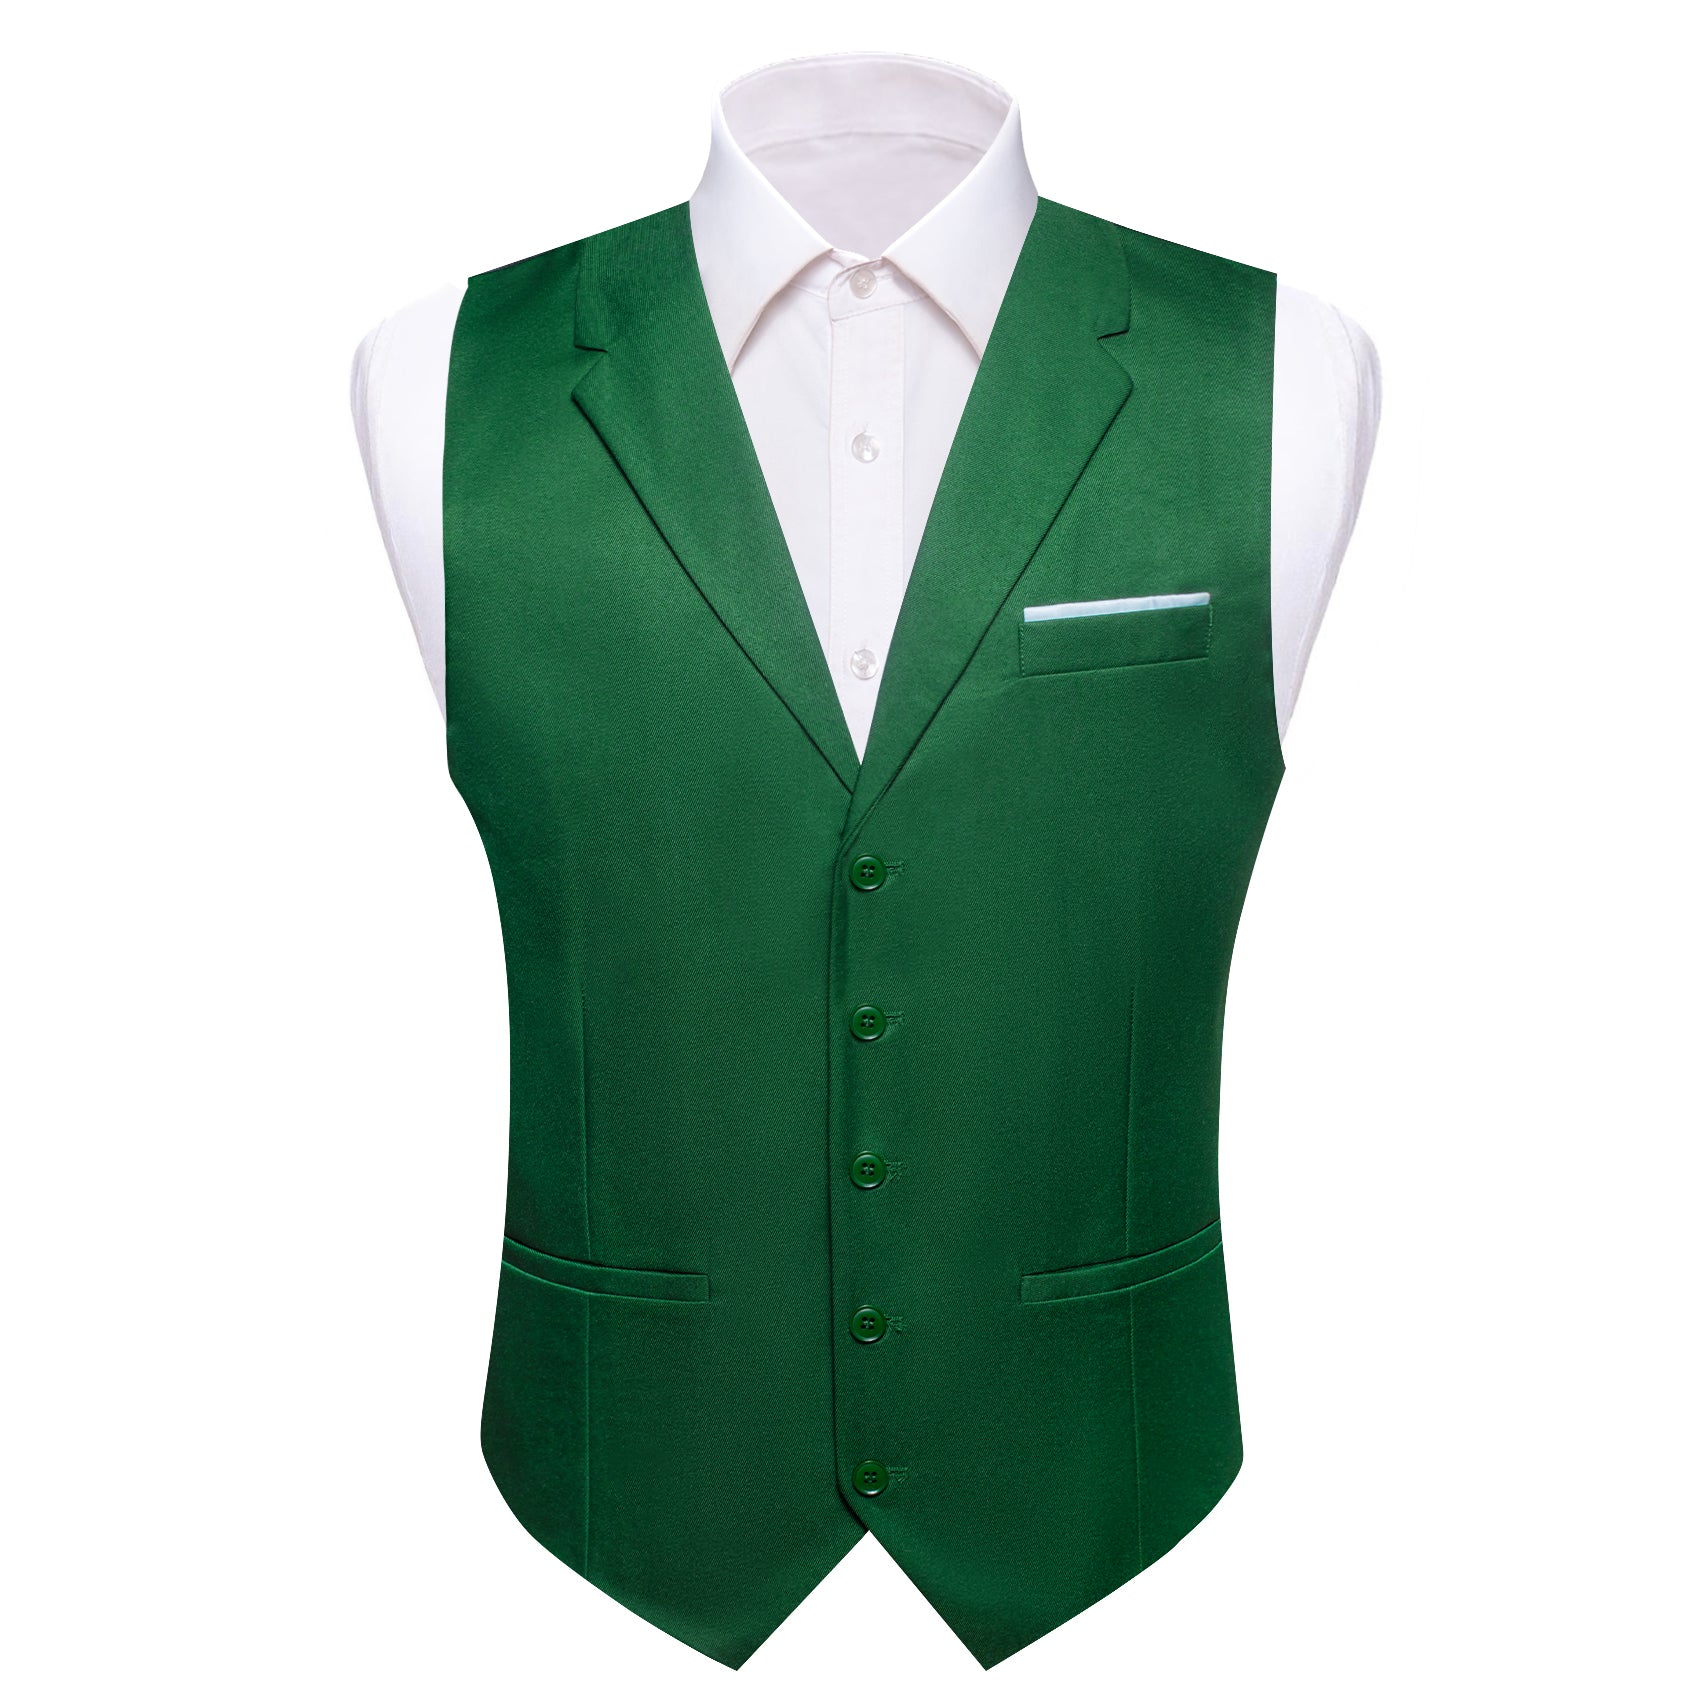 Barry.wang Grass Green Solid Vest Waistcoat Set